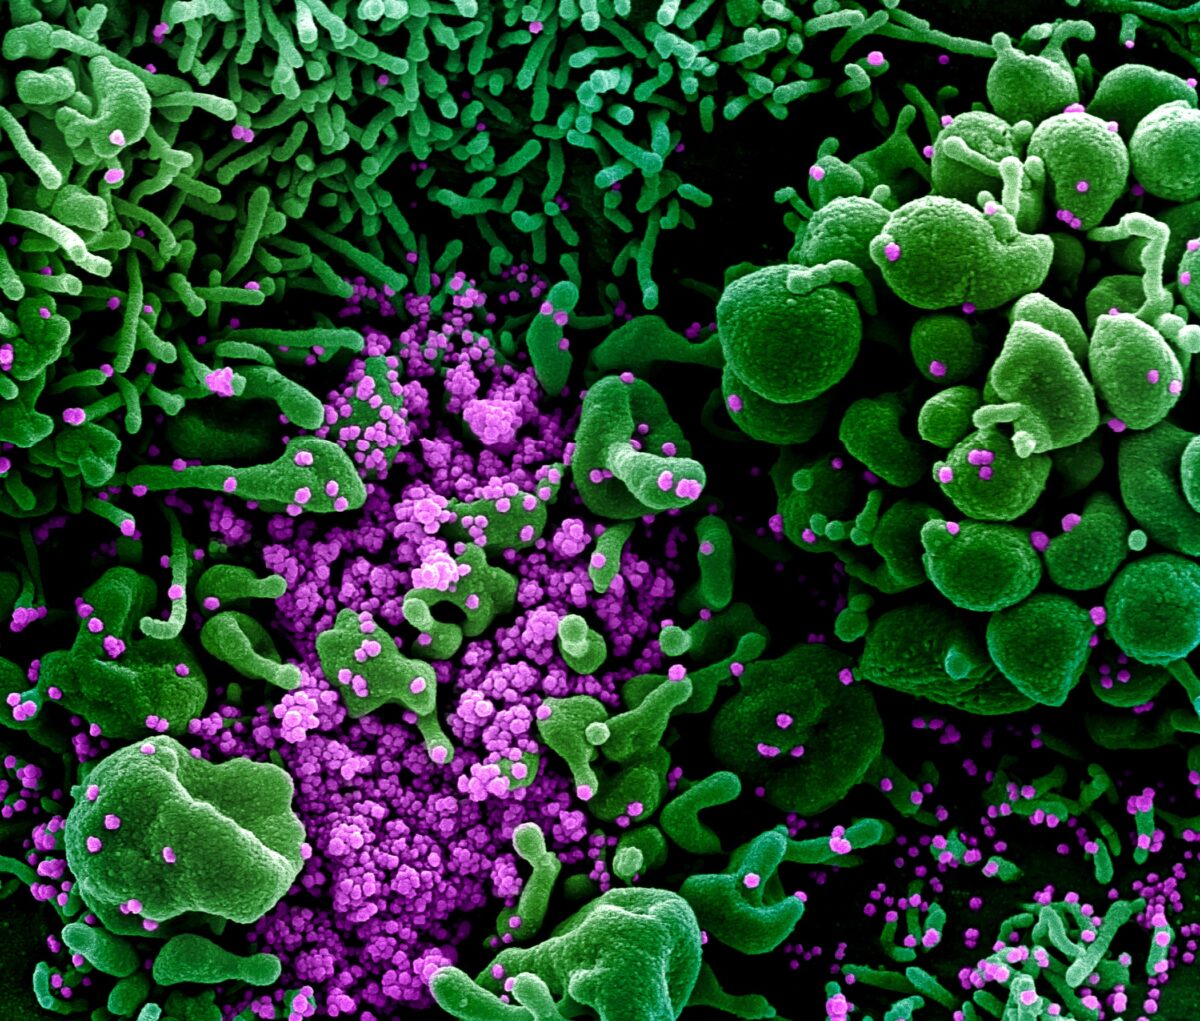 Micrografia eletrônica de varredura em cores de uma célula (verde) fortemente infectada com partículas do vírus do PCC (roxo), comumente conhecidas como vírus SARS-CoV-2 ou CCP, isoladas de uma amostra de paciente, publicada em 16 de março de 2020 (NIAID)